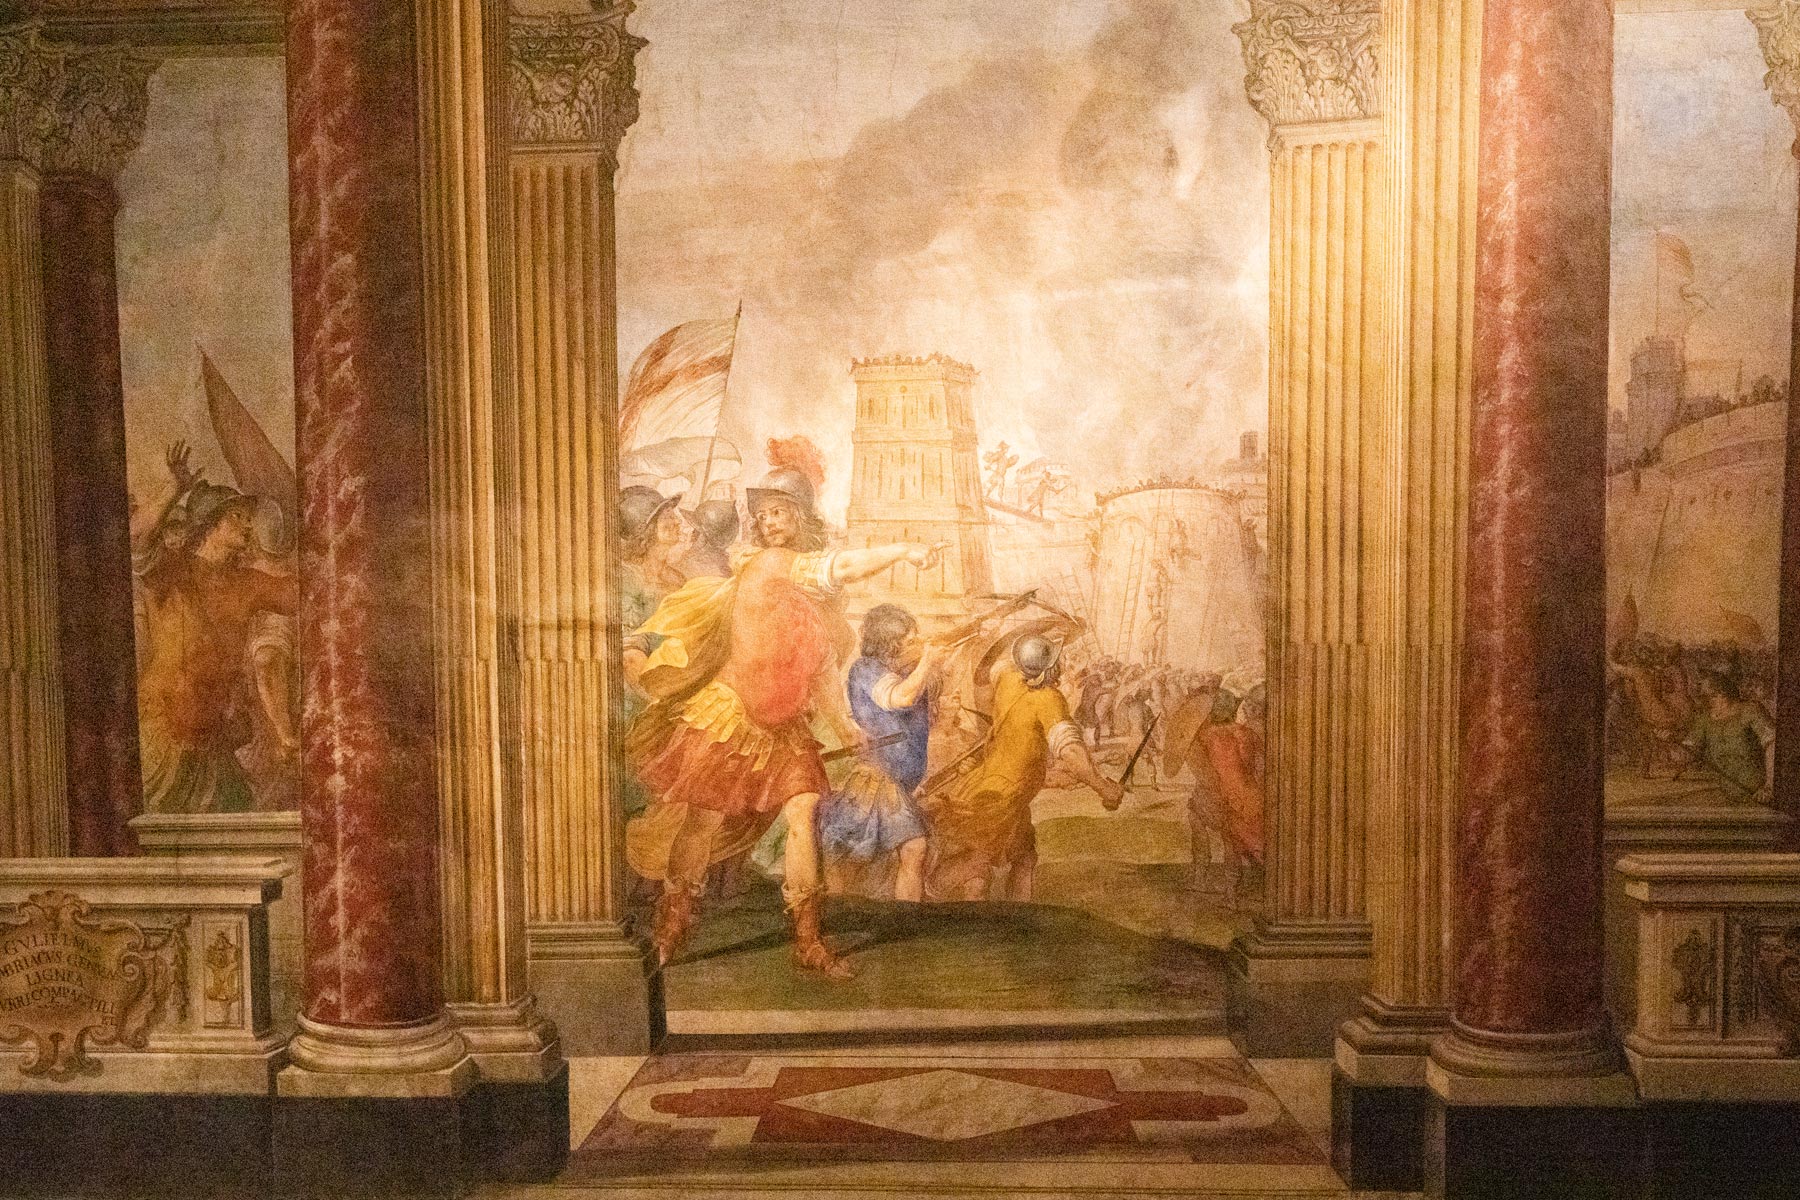 Dettaglio della parete di destra, raffigurante La Presa di Gerusalemme
